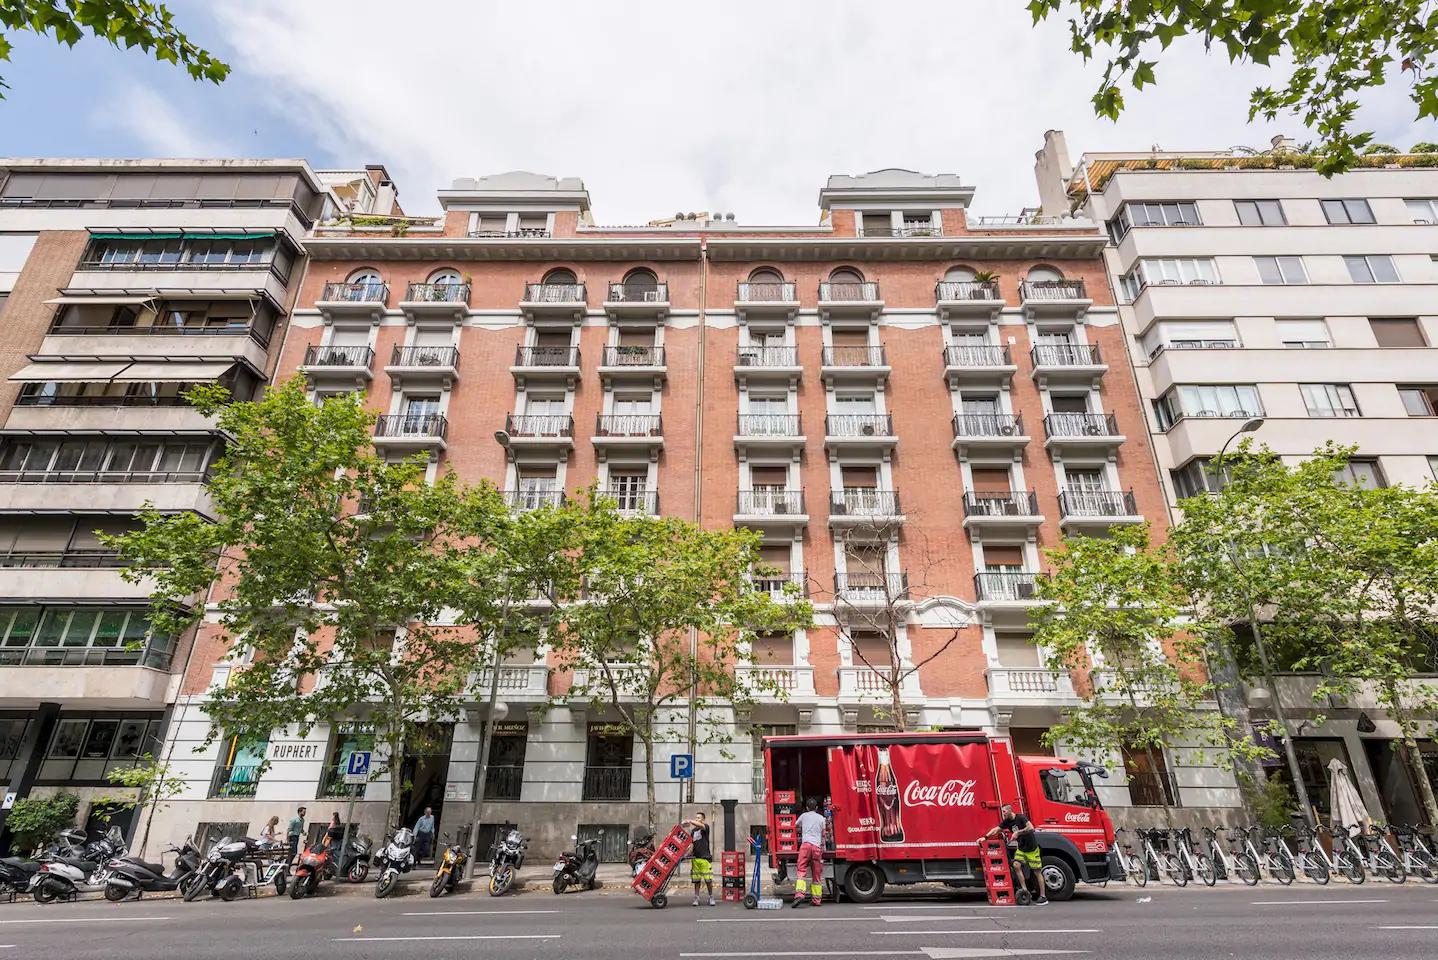 Spacious luxury flat in Madrid